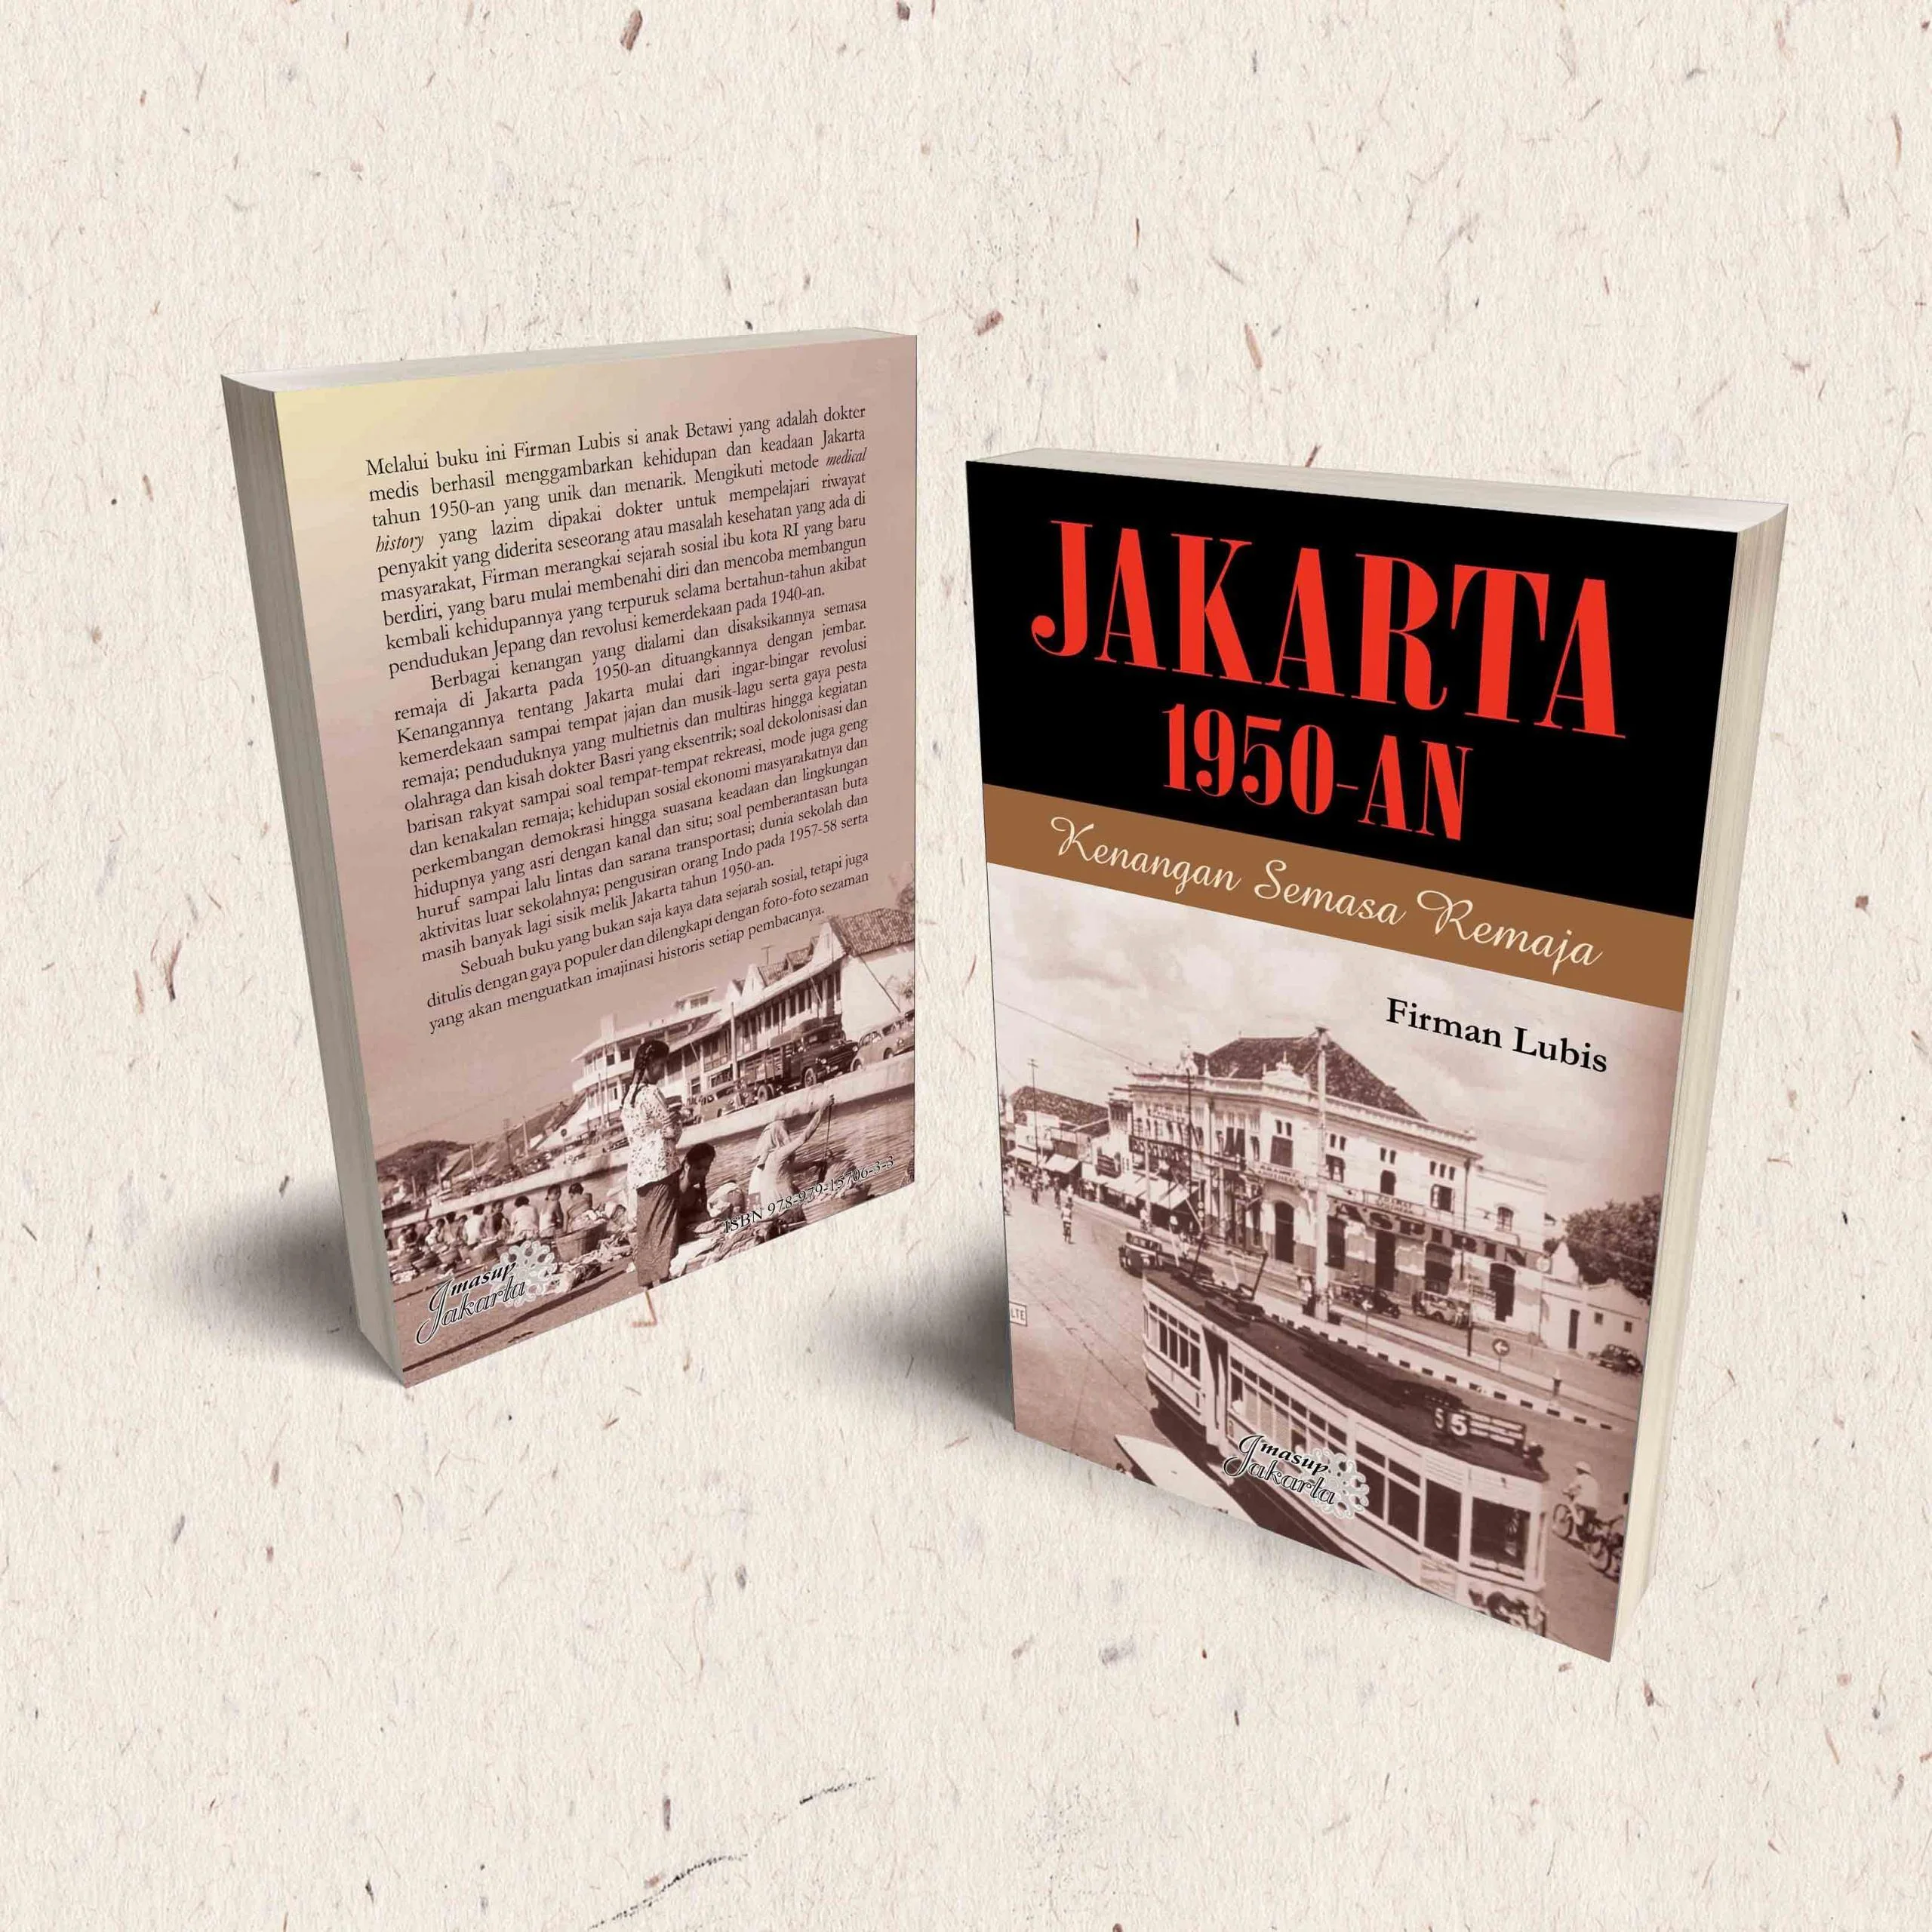 Jakarta 1950-An: Kenangan Semasa Remaja